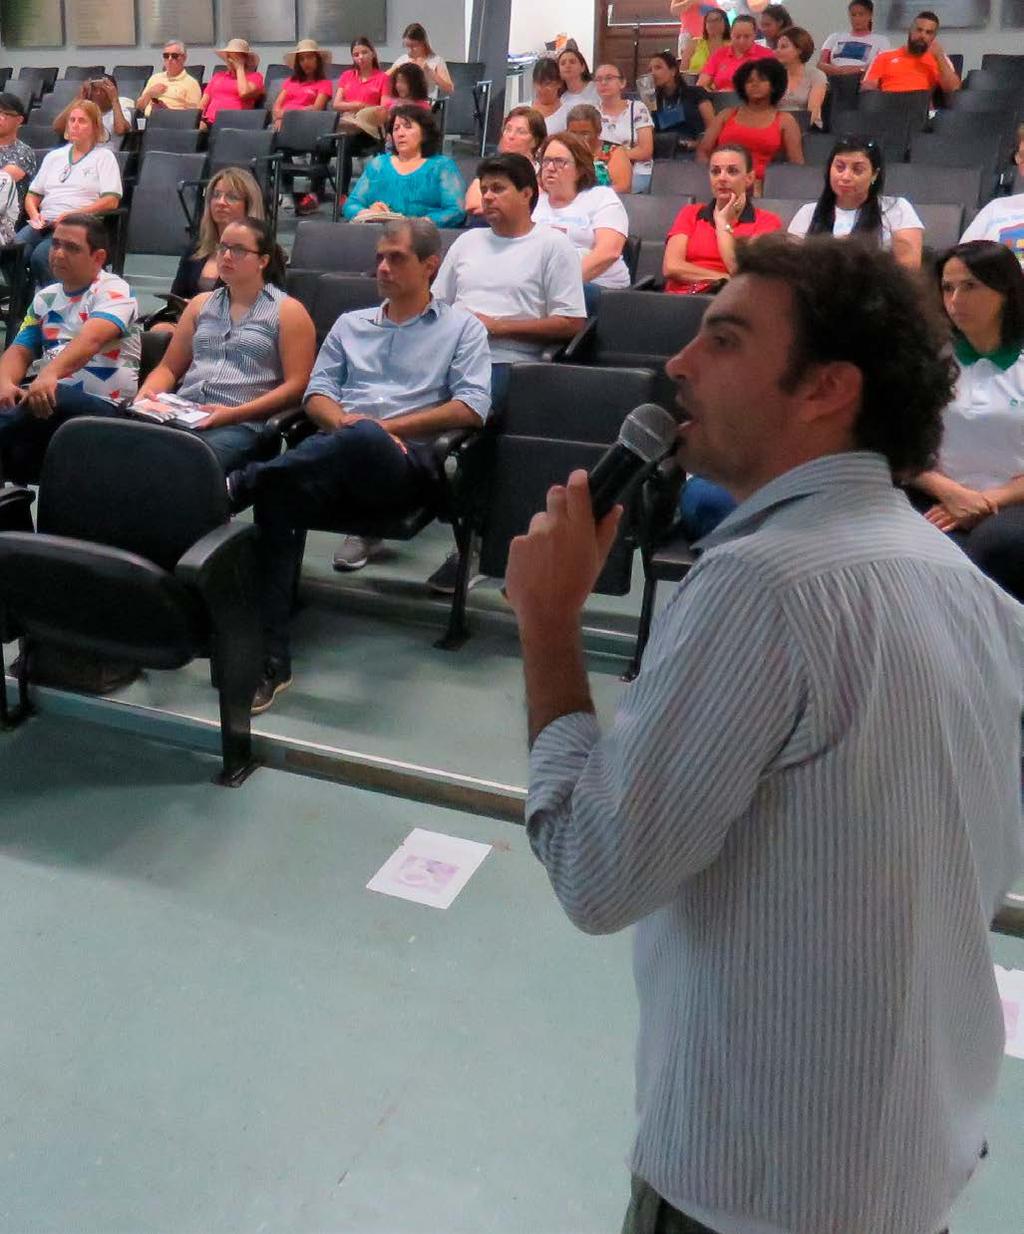 A agenda de propostas elaboradas em cada grupo de trabalho para o desenvolvimento de Lucas do Rio Verde foi apresentada para toda a comunidade em um evento realizado em agosto de 2017, que contou